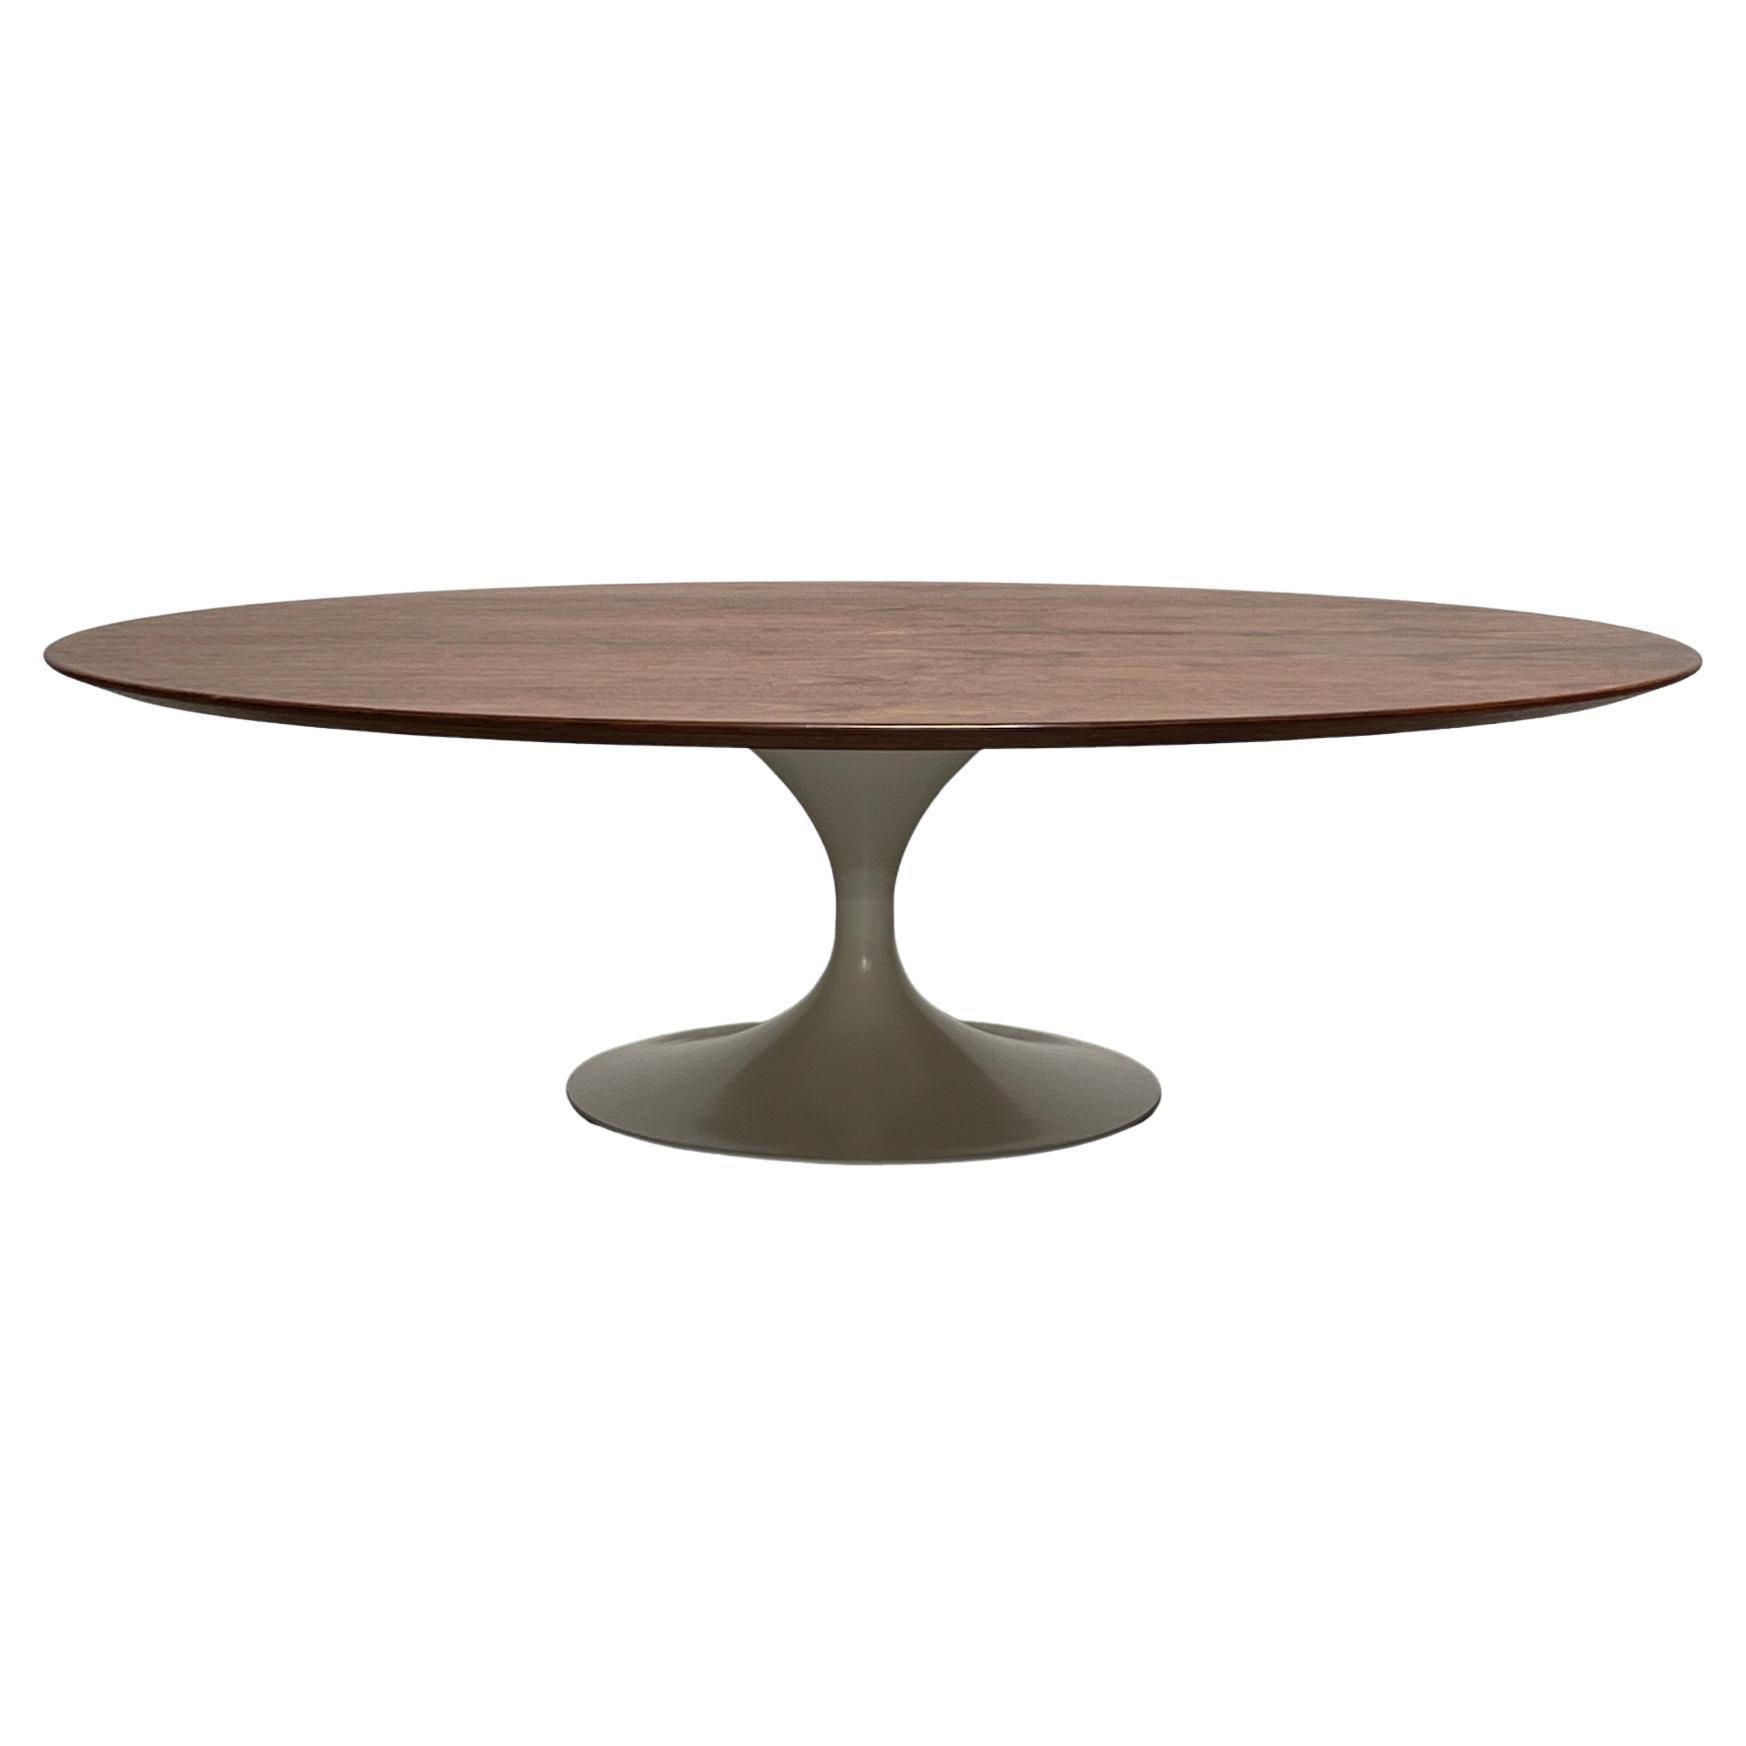 Table basse elliptique par Eero Saarinen pour Knoll